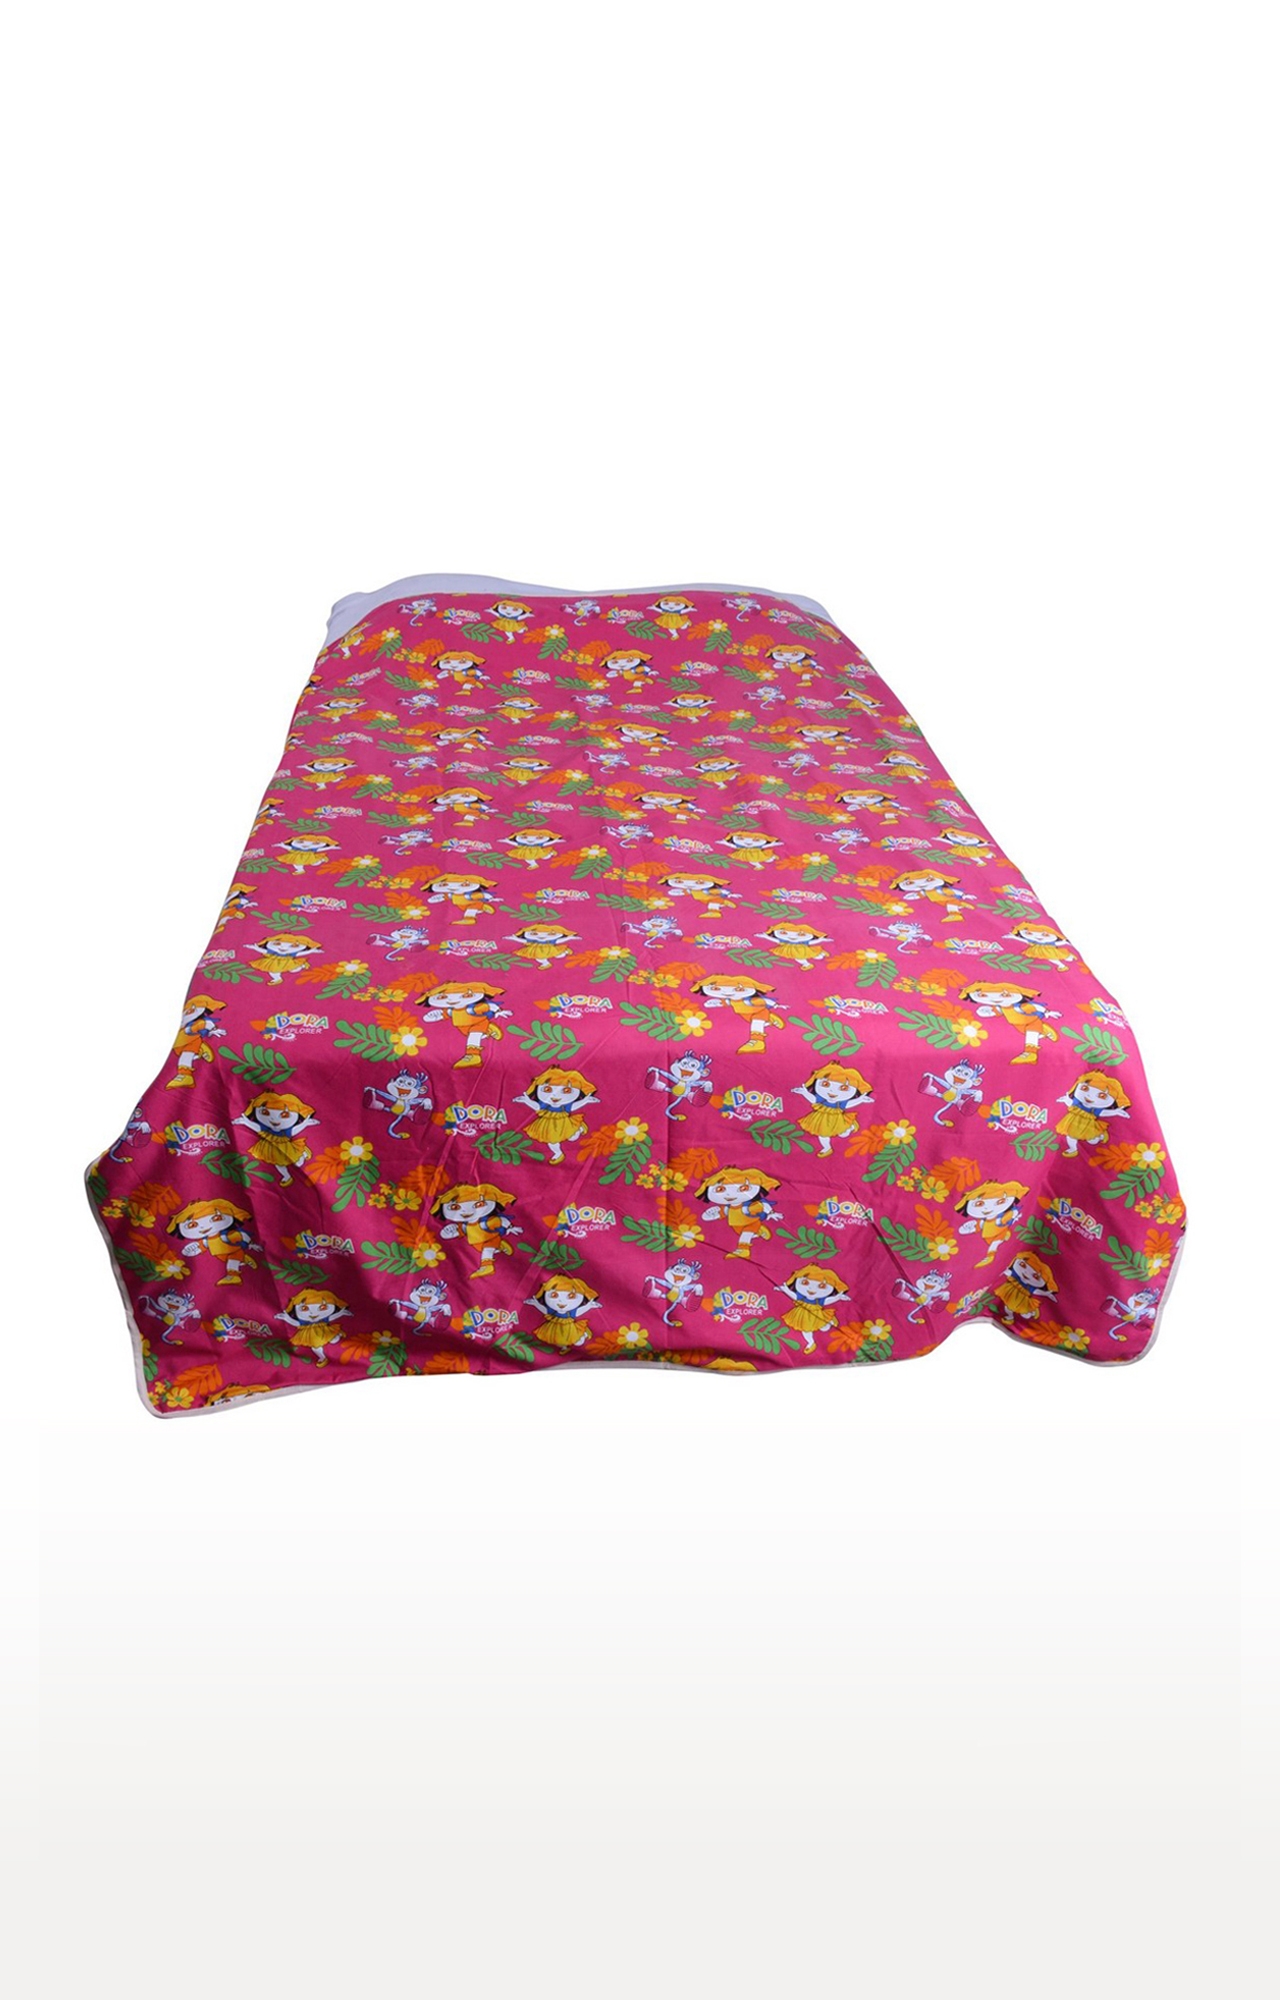 V Brown | Dora Explorer Printed Cotton 3 Layer Single Bed Quilt Dohar